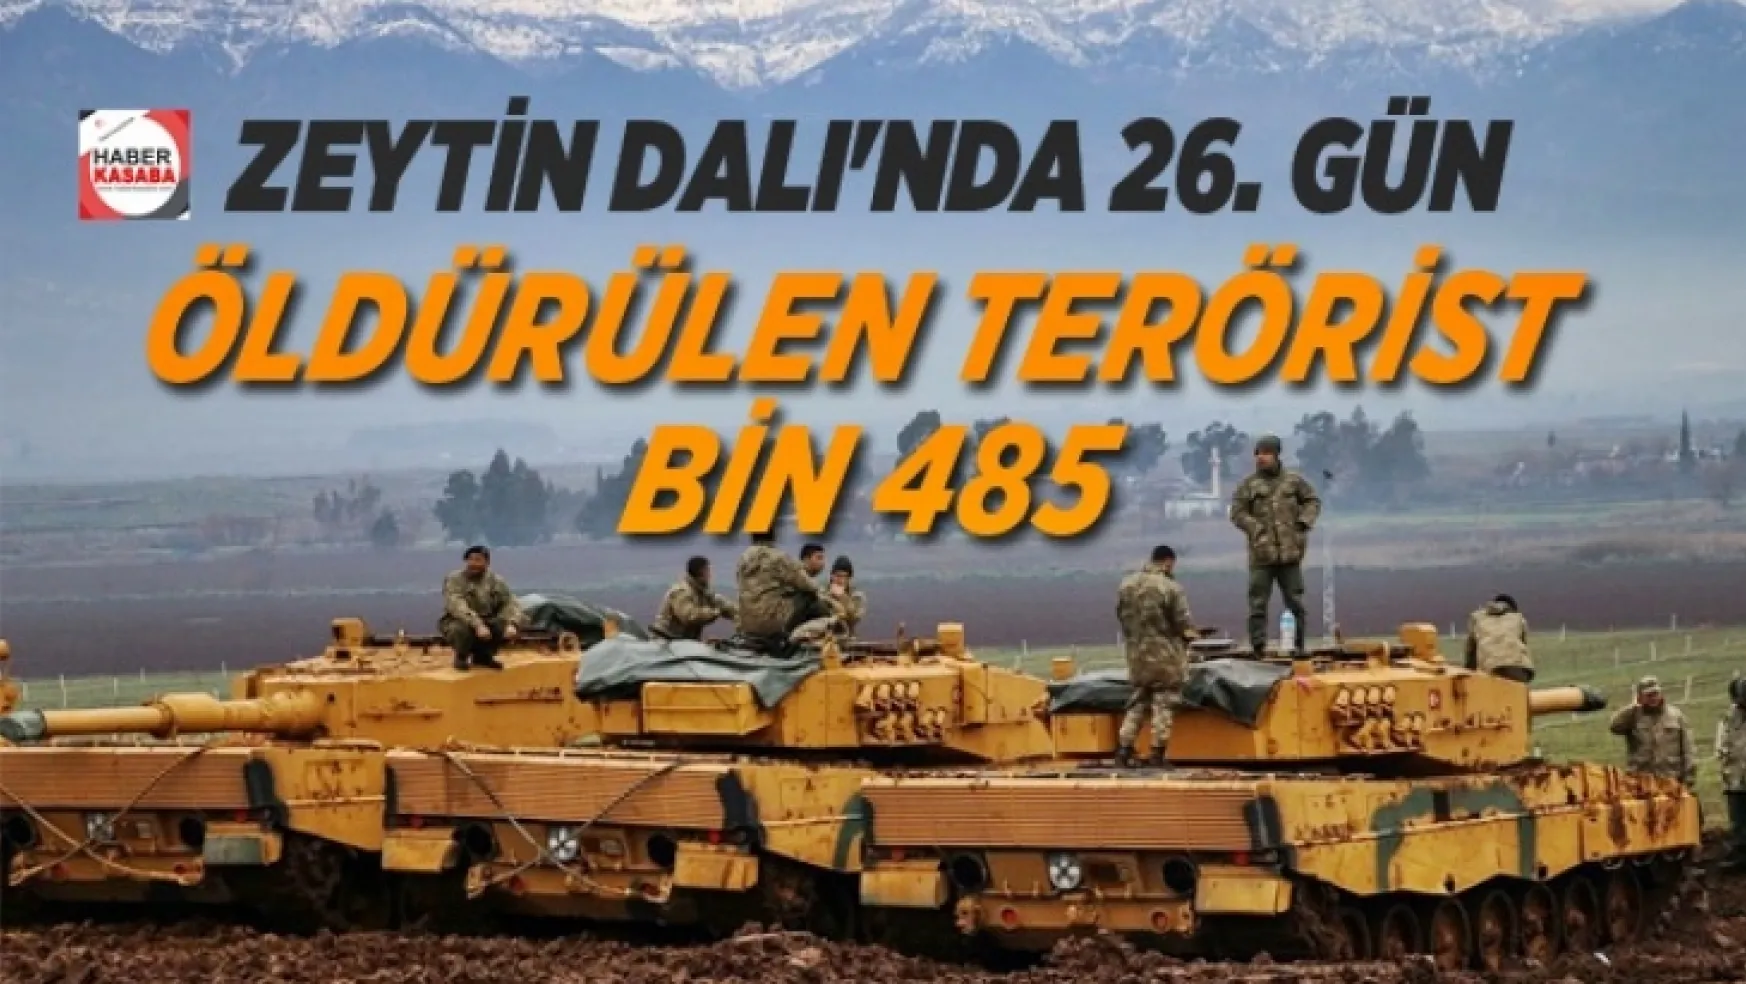 Zeytin Dalı Harekatı'nda 26. gün Öldürülen terörist 1485